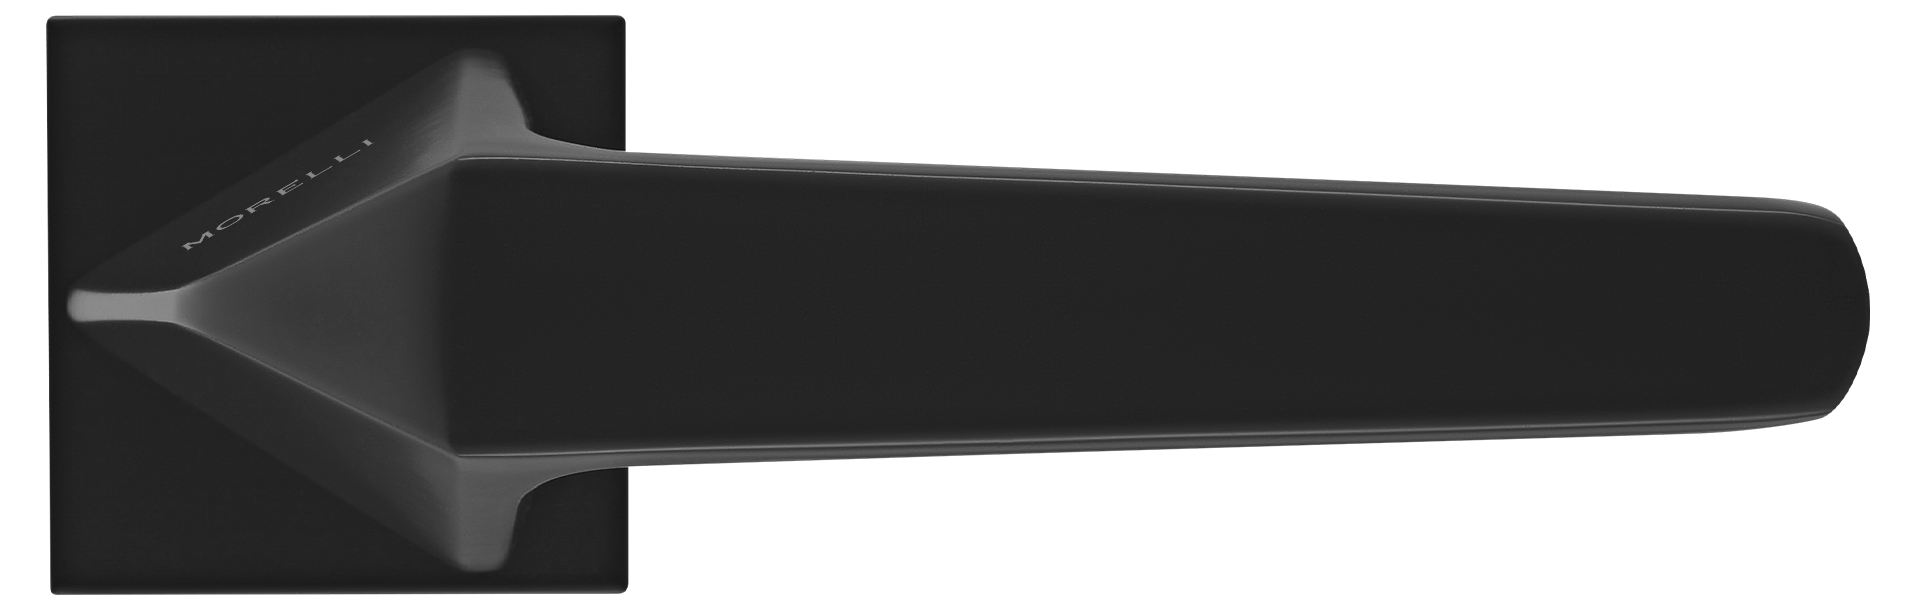 SOUK ручка дверная на квадратной розетке 6 мм, MH-55-S6 BL, цвет - черный фото купить в Оренбурге